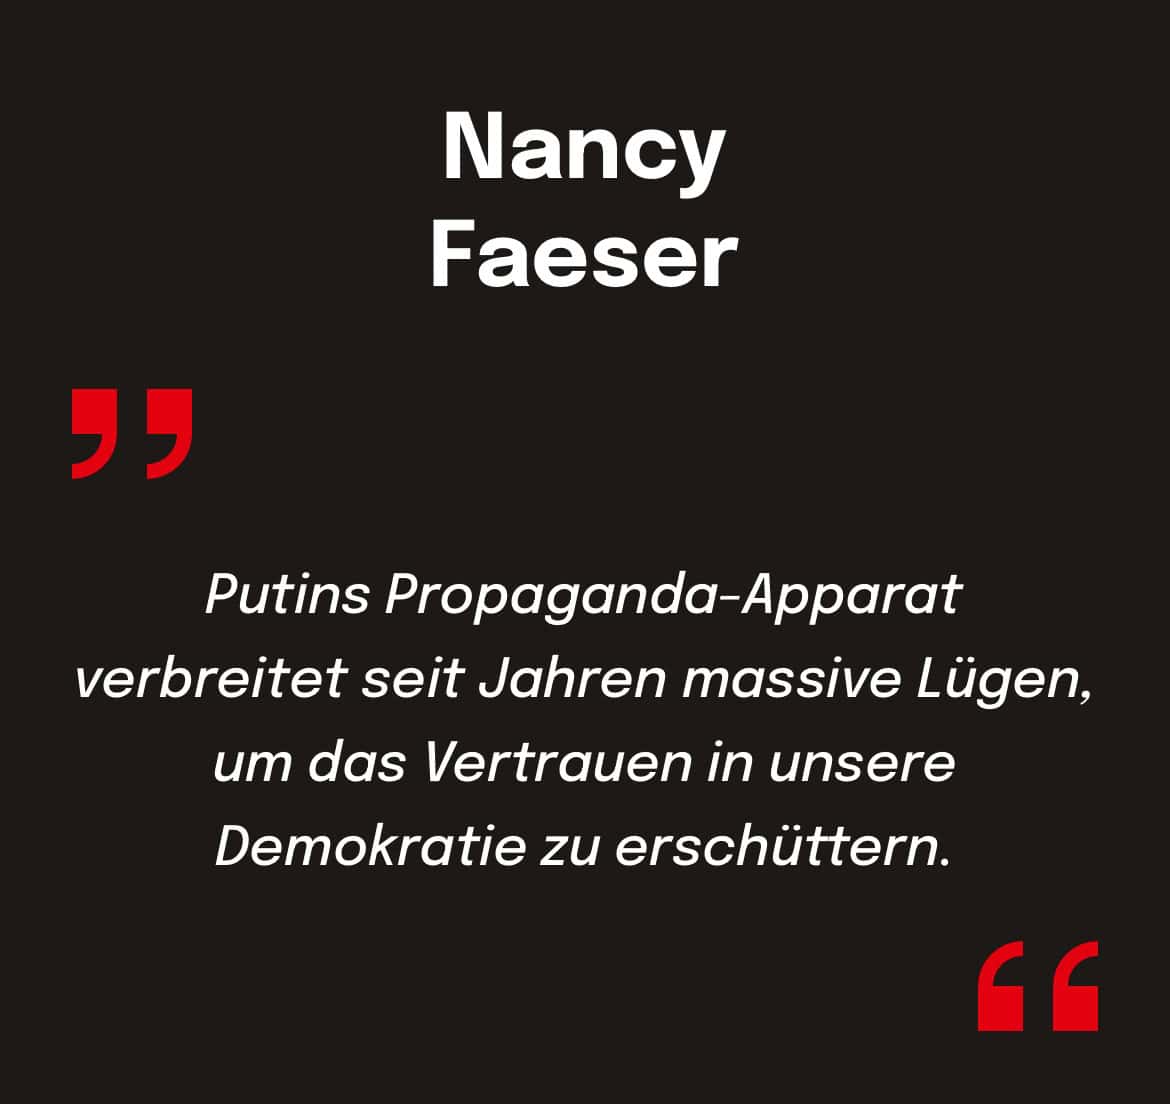 Nancy Faeser: Putins Propaganda-Apparat verbreitet seit Jahren massive Lugen, um das Vertrauen in unsere Demokratie zu erschüttern.